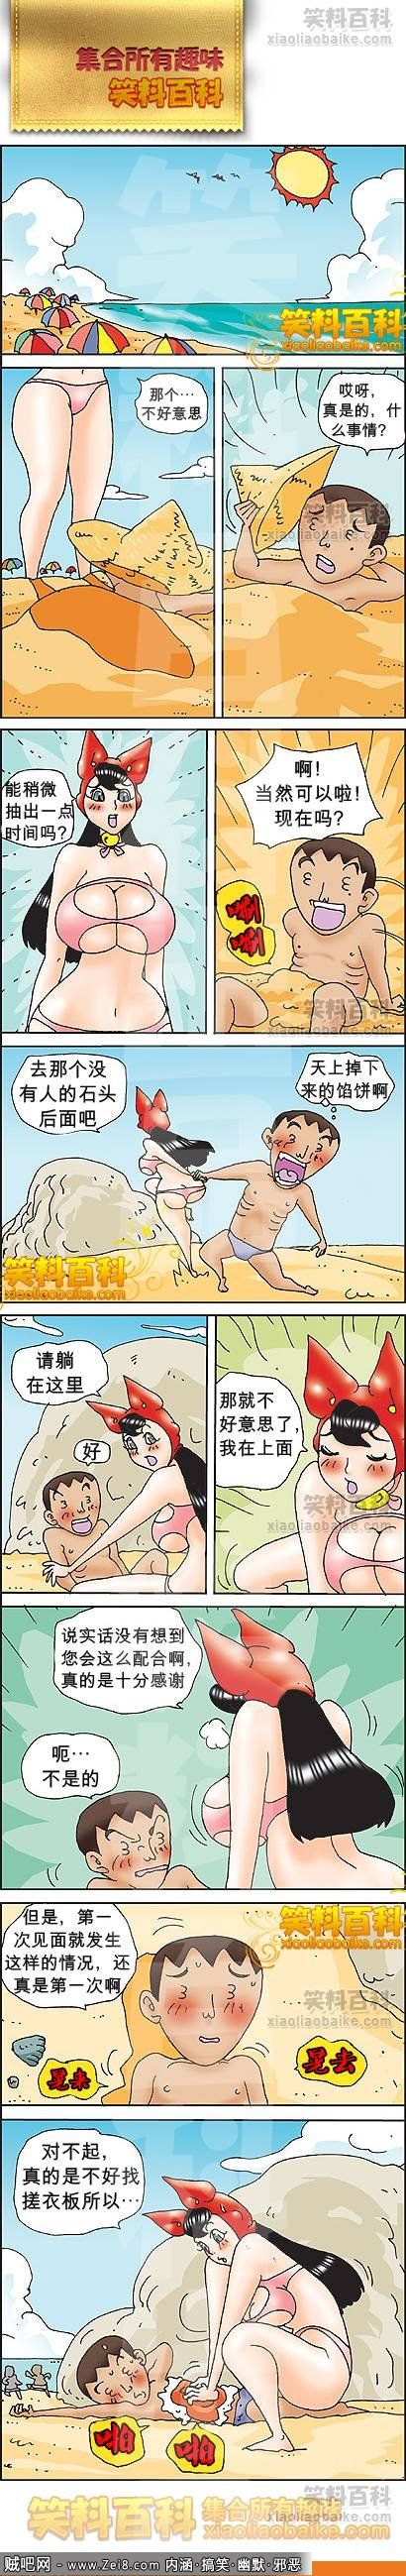 [搞笑的馅饼漫画(韩国)]：你骗人，逗你玩